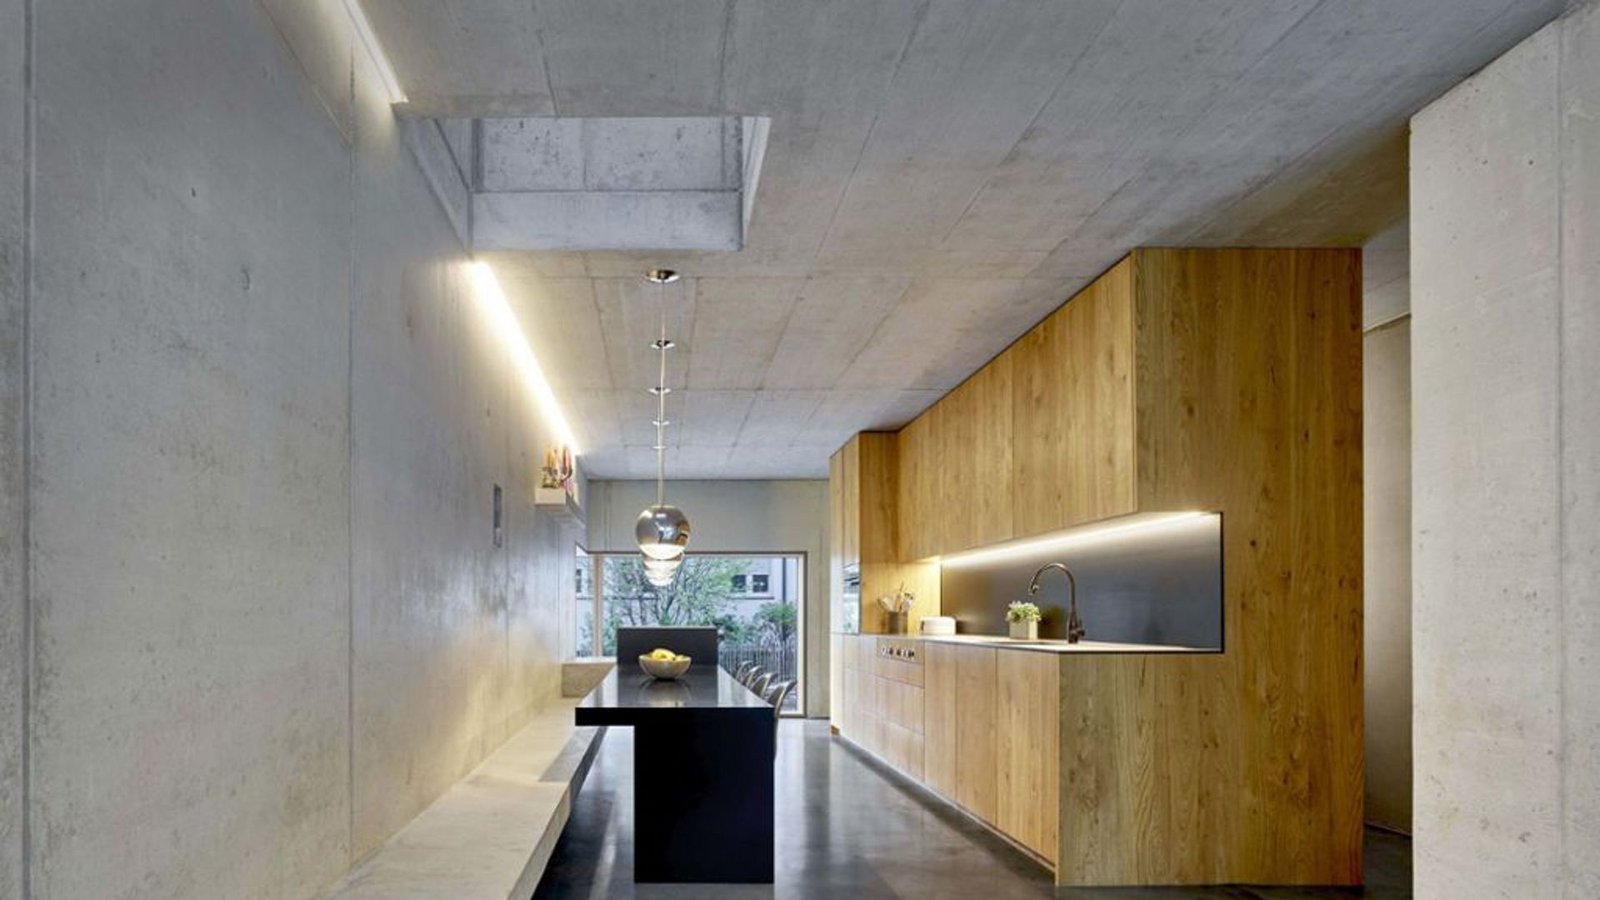 Hier in Blick in den puristischen Küchenbereich des Einfamilienhauses in Stuttgart.Foto: zoll-architekten.de/Zooey Braun